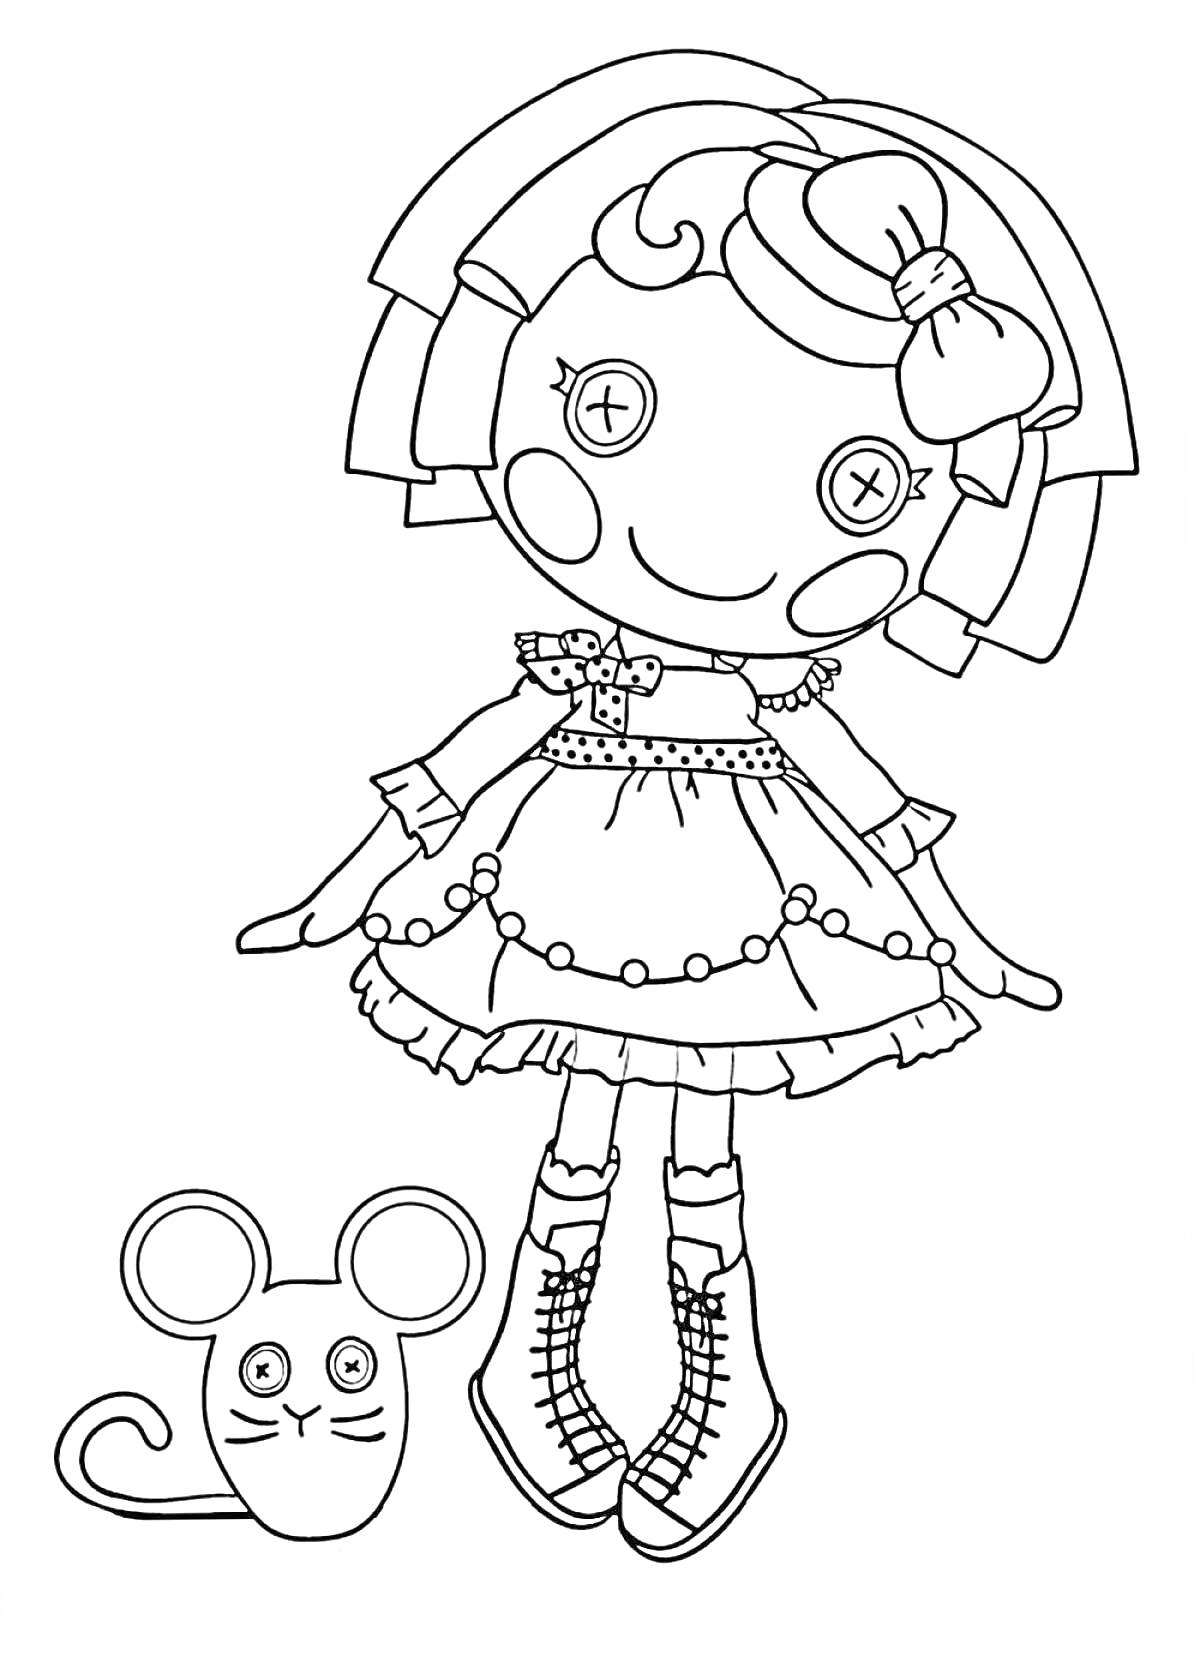 Раскраска Лалалупси кукла в платье с пуговицами и бантом на волосах, рядом с мышкой